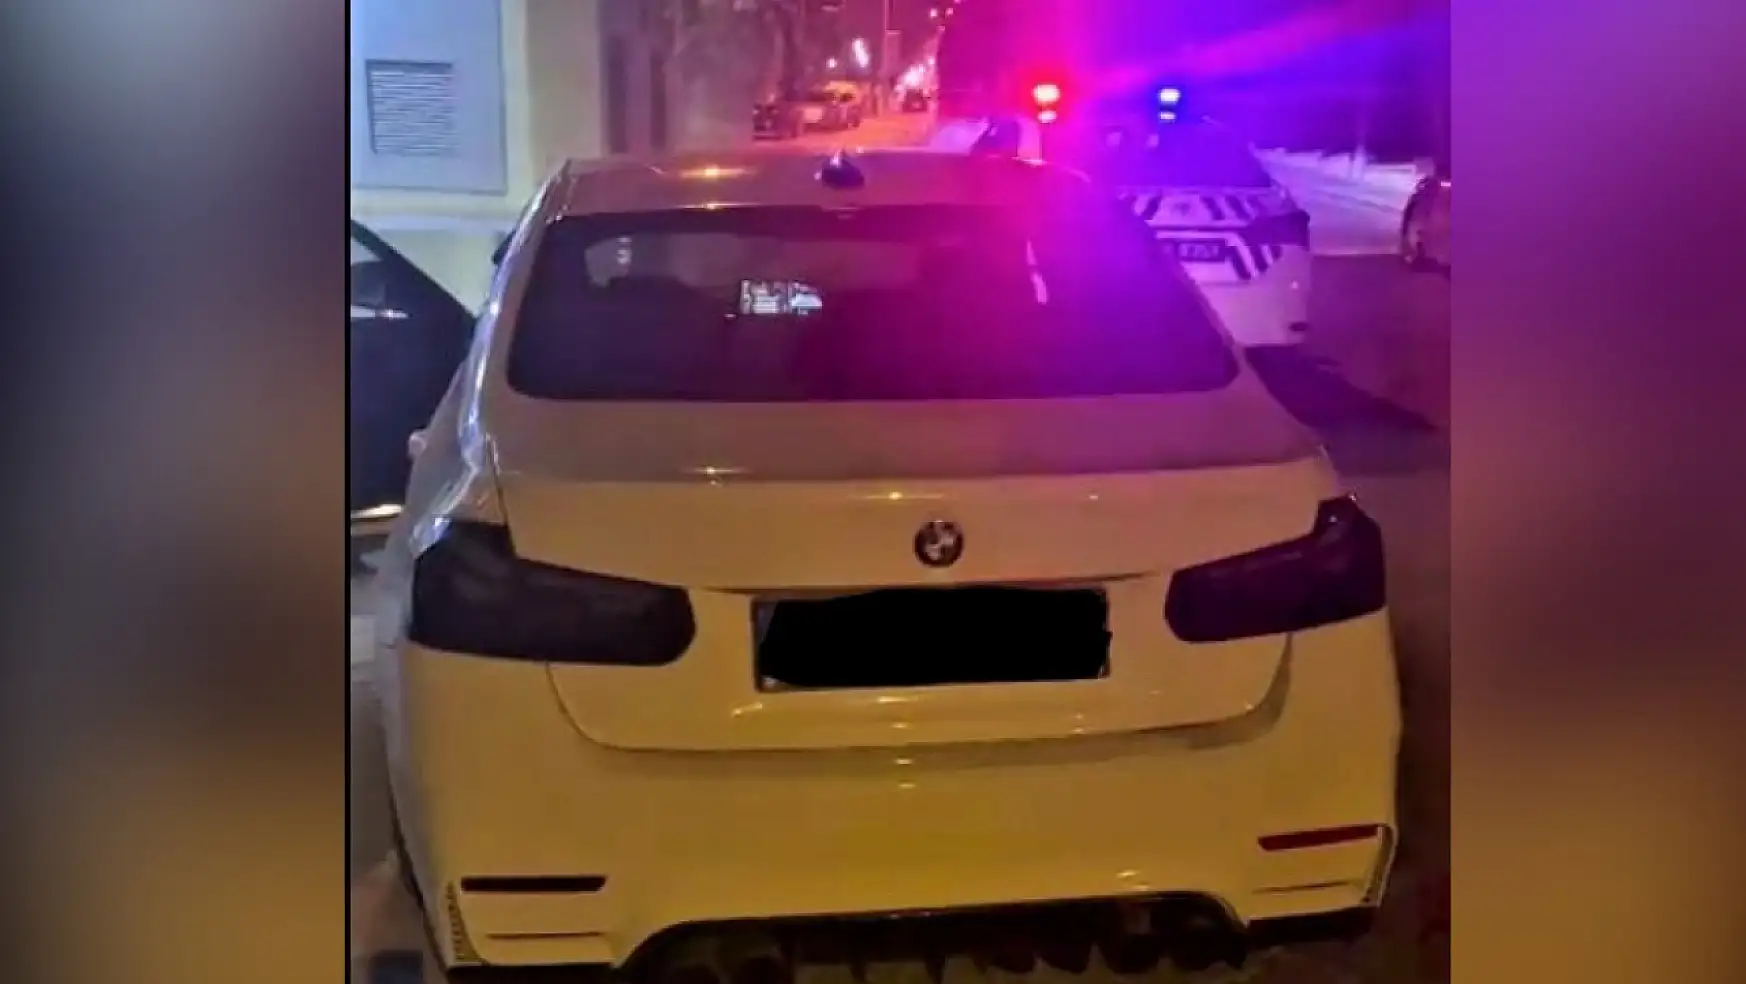 Fethiye trafik polislerinden abartı egzozlu araçlara yoğun denetim 